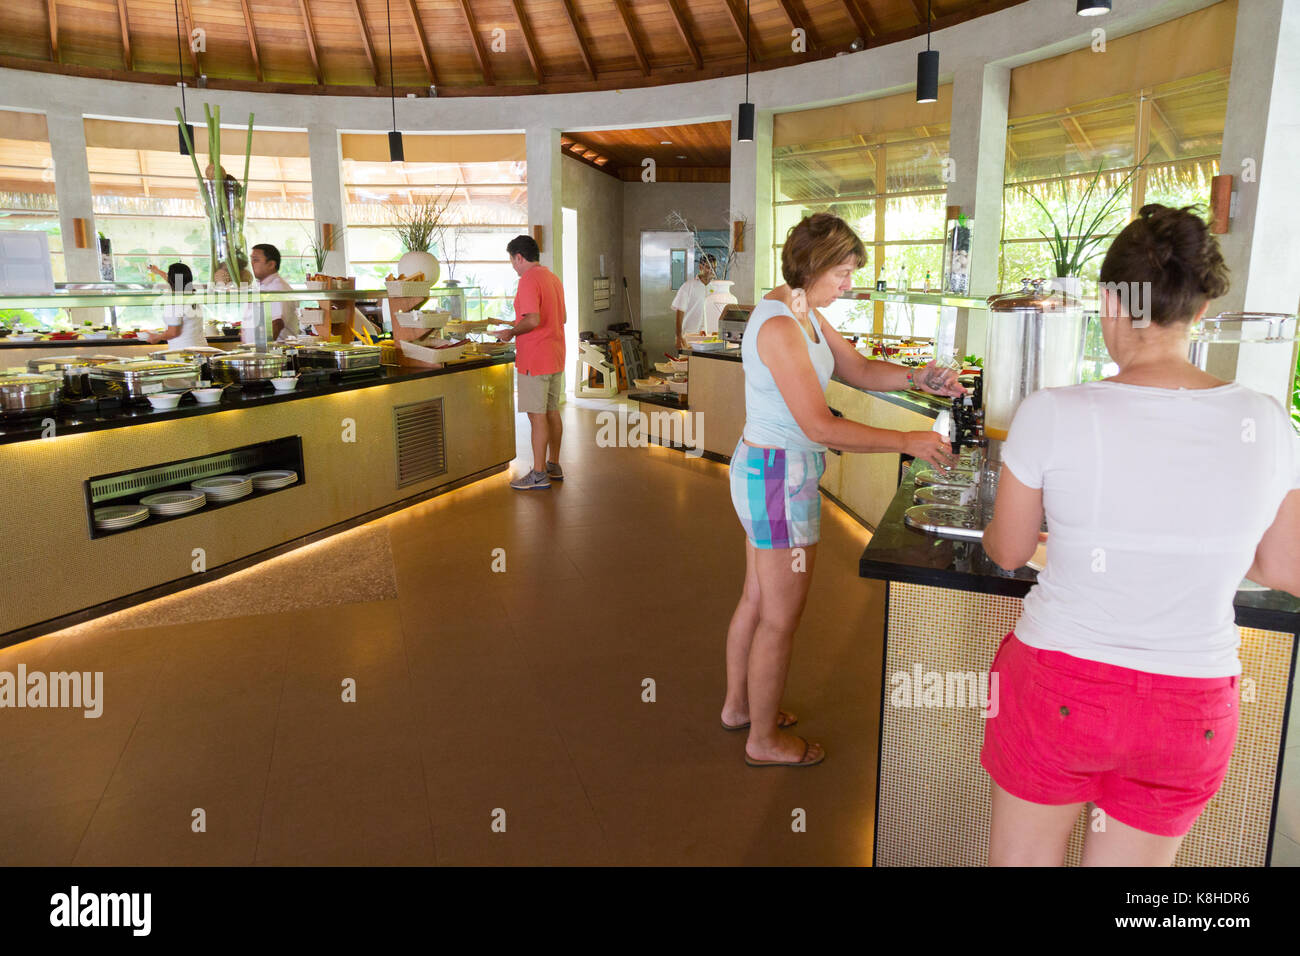 Maldives resort - Guests at breakfast buffet at Kuramathi resort, Maldives, Asia Stock Photo